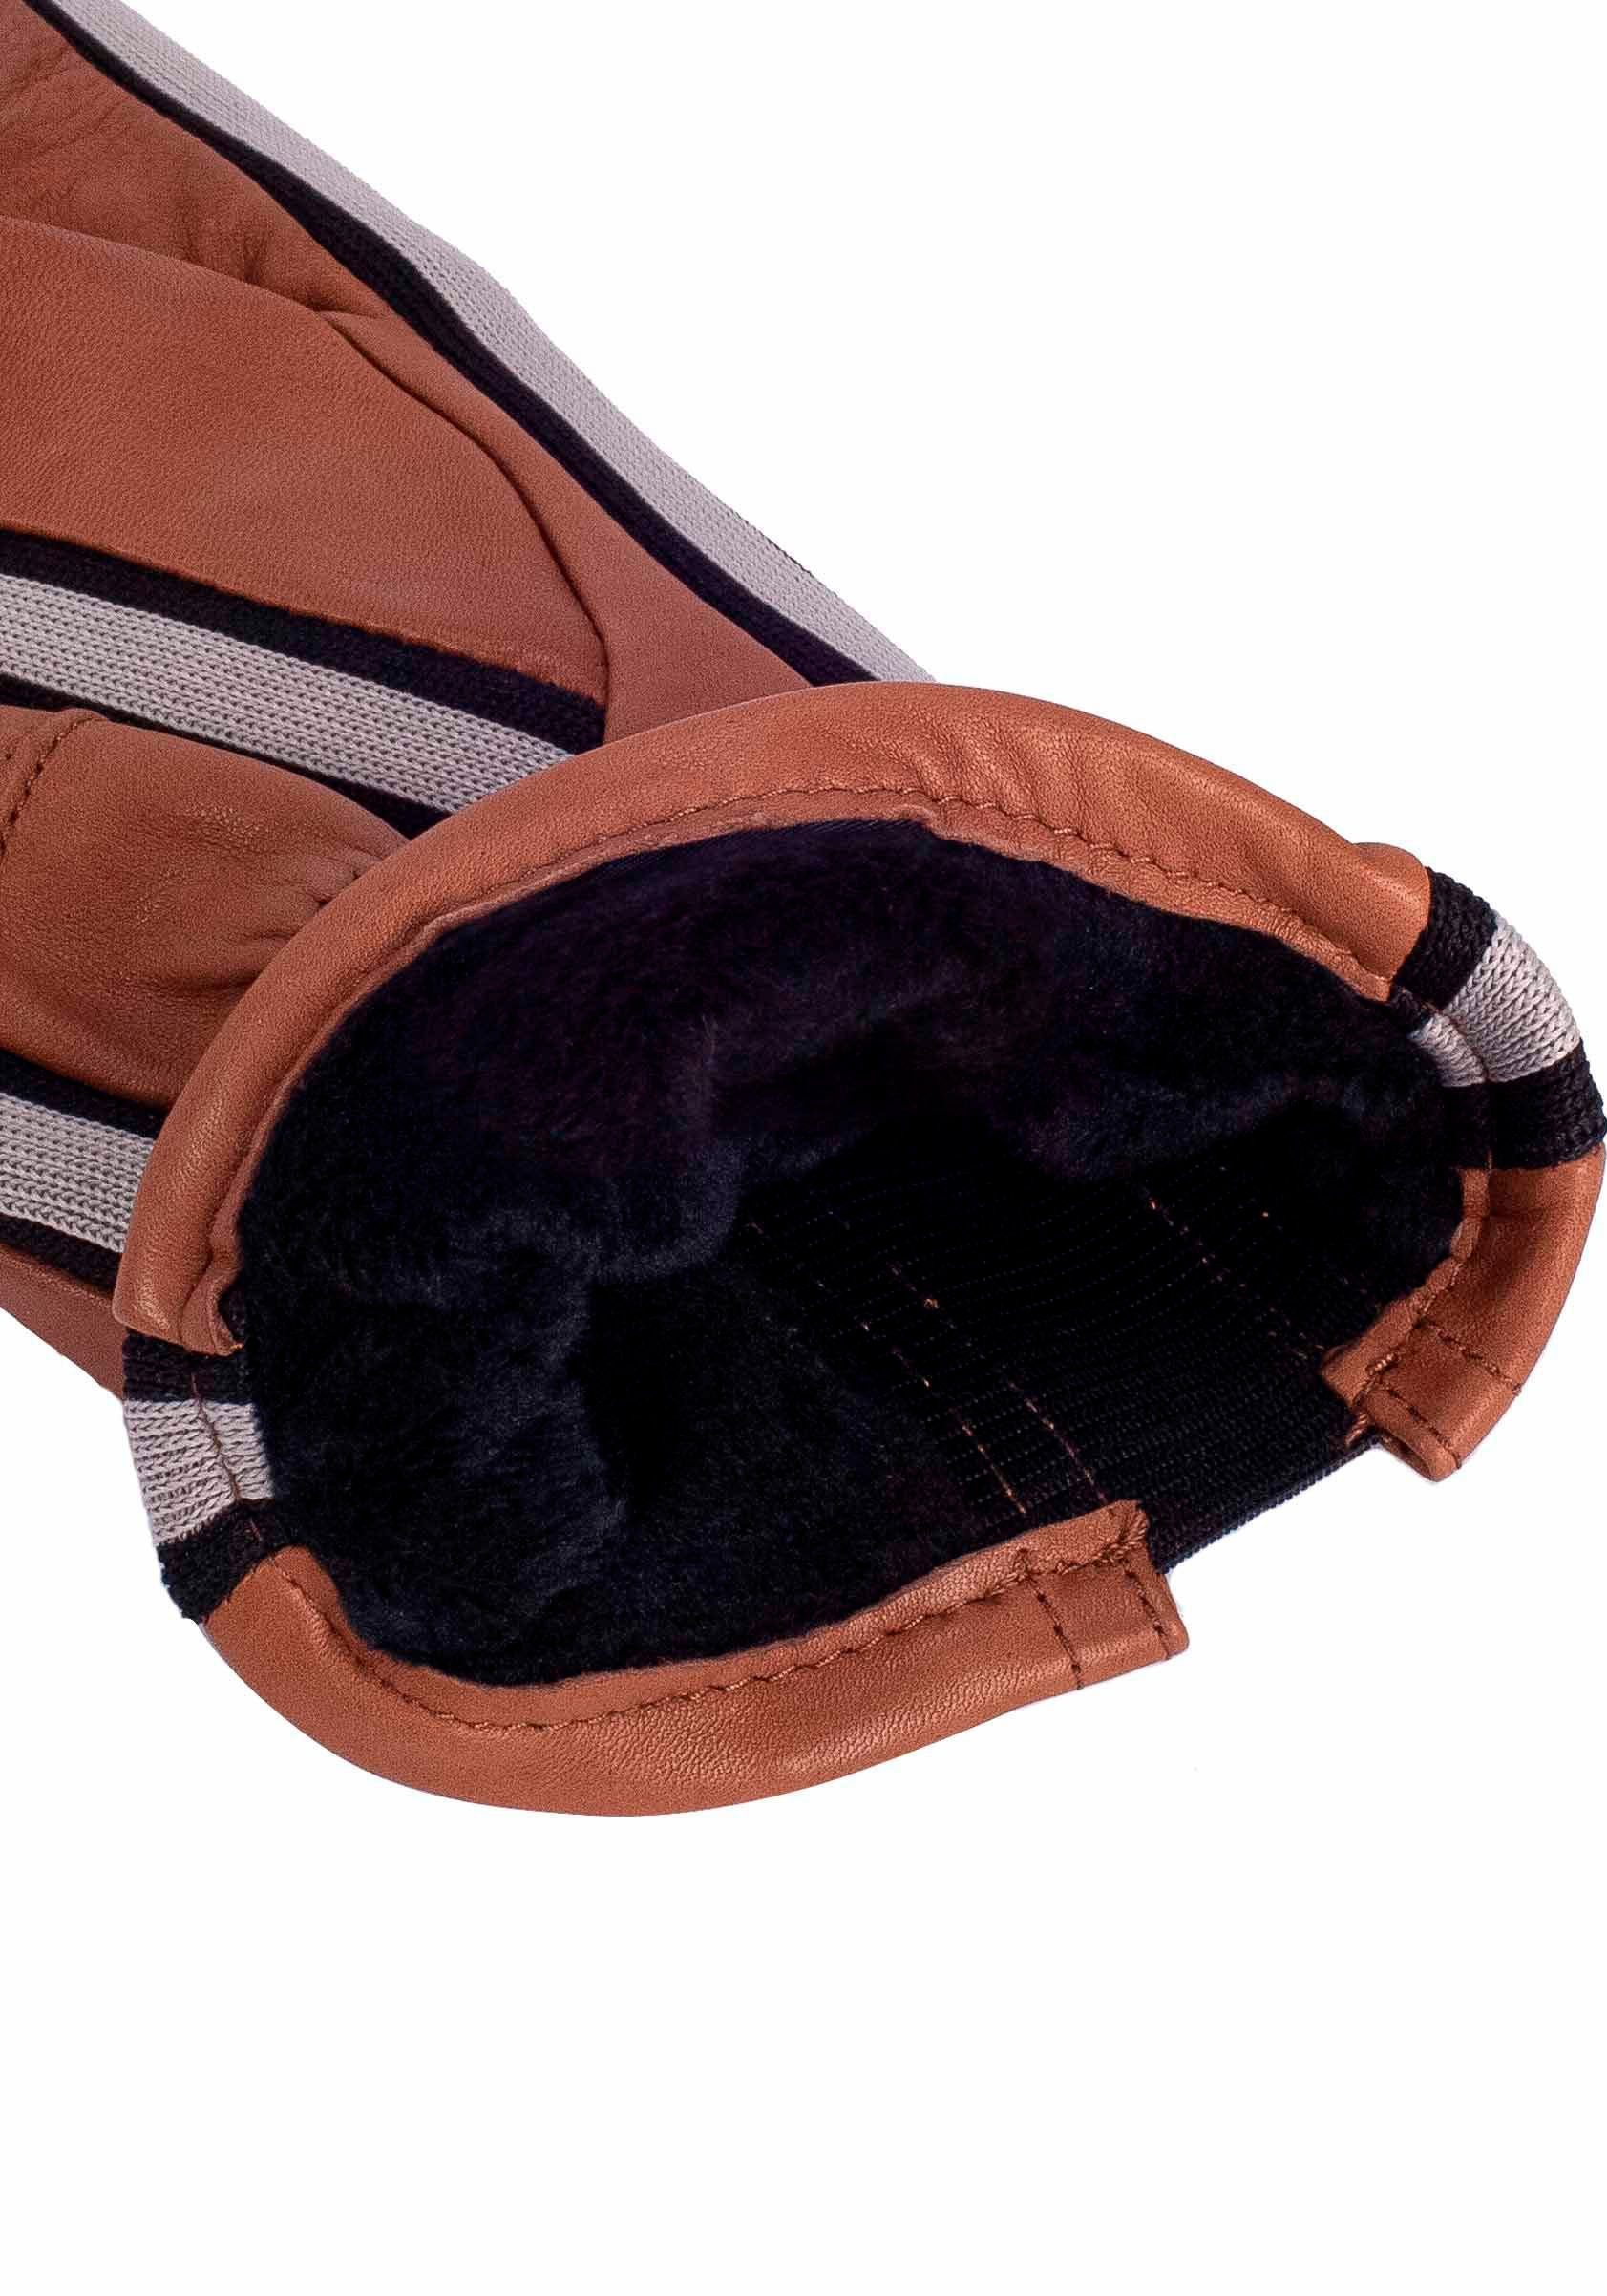 KESSLER medium Sneaker- sportliches Gil im Touch mit Look brown Touchfunktion Design Lederhandschuhe